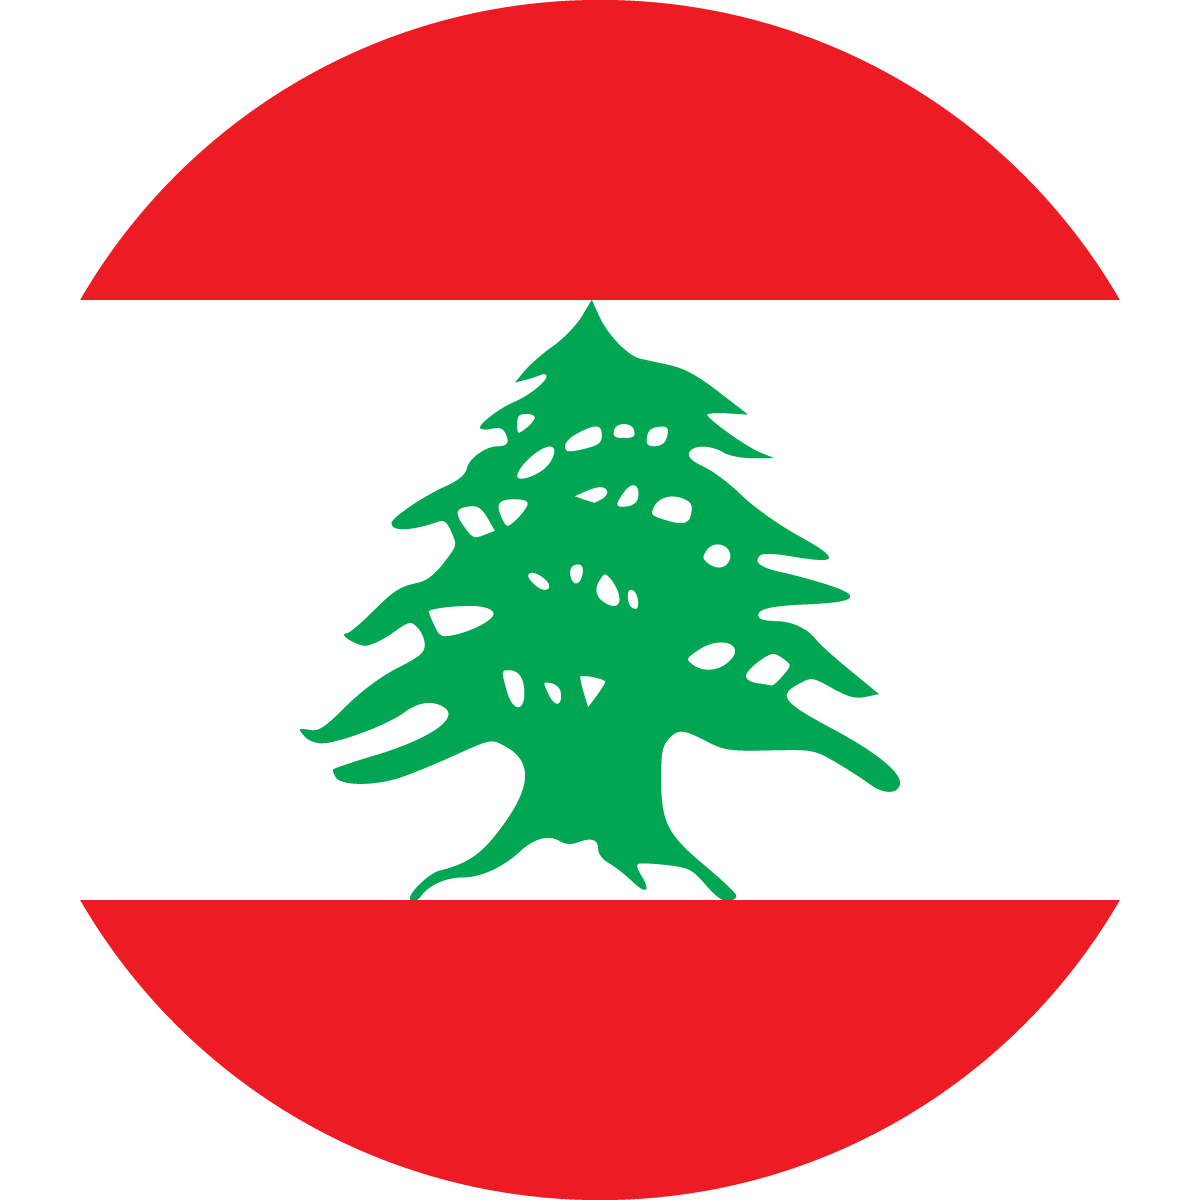 Copy of Copy of Copy of Copy of Copy of Lebanon